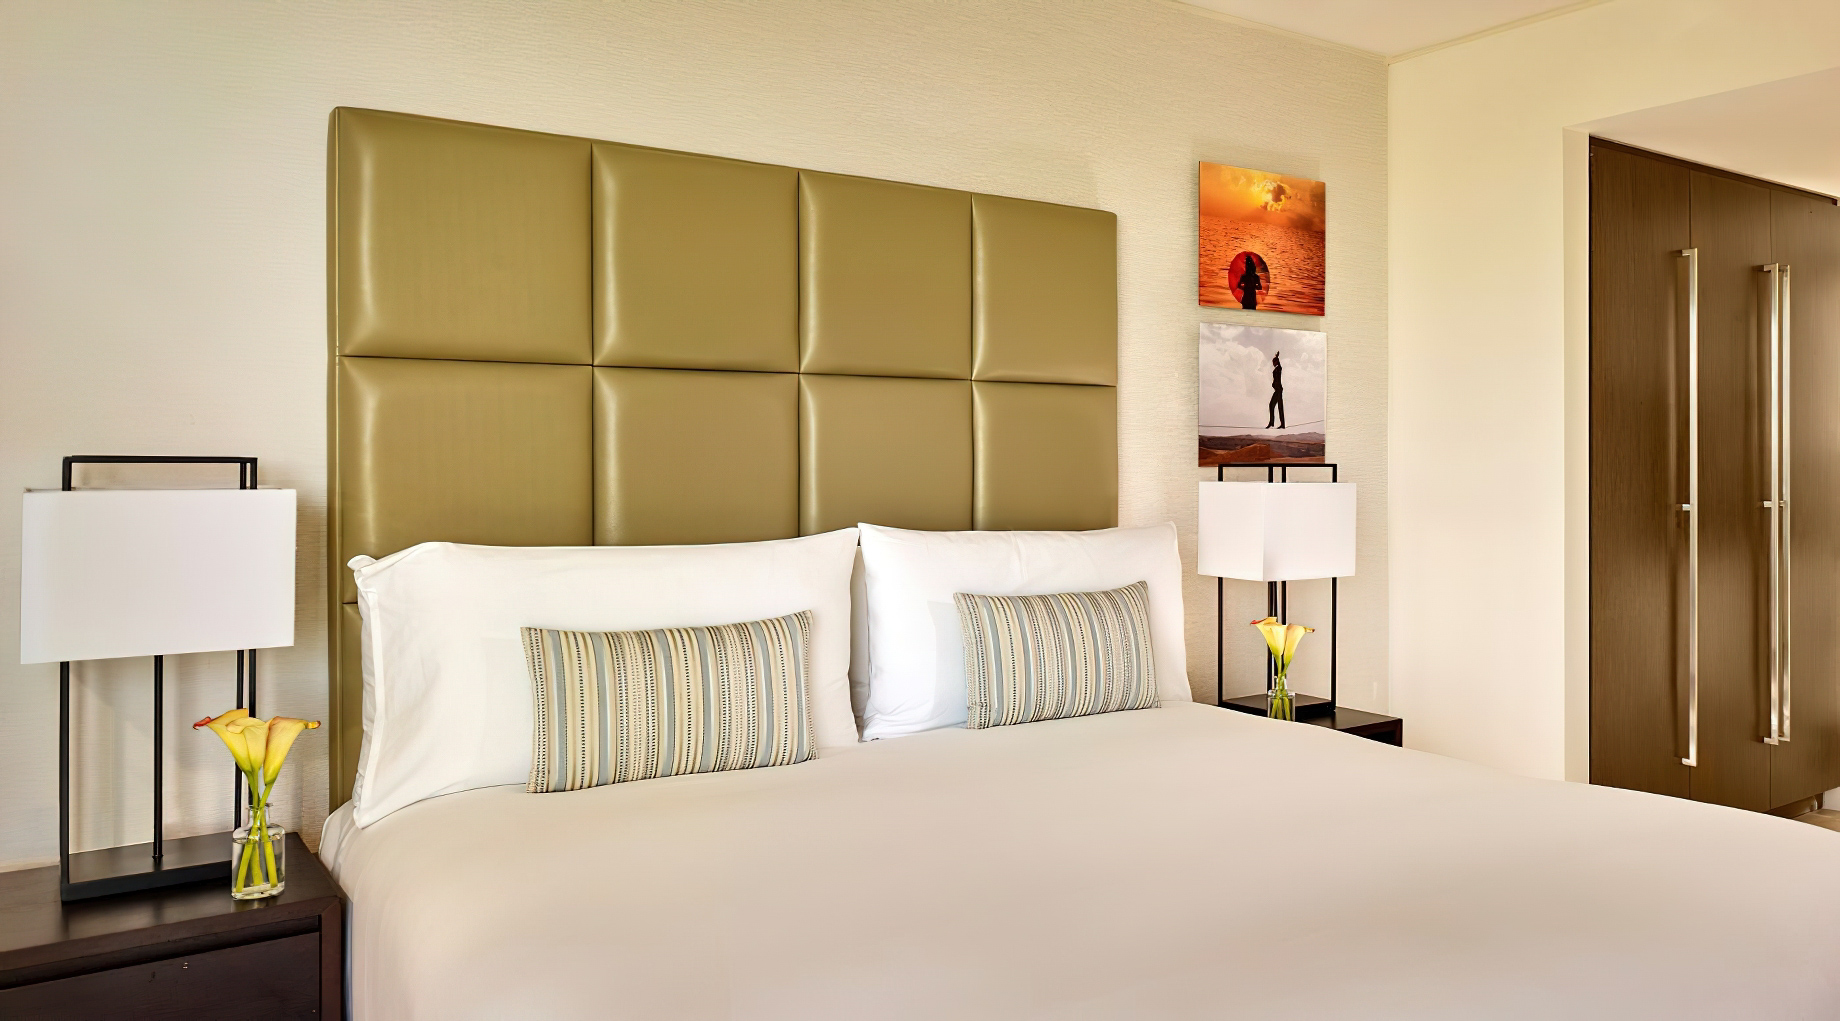 The Ritz-Carlton, Herzliya Hotel – Herzliya, Israel – Studio Room Bed